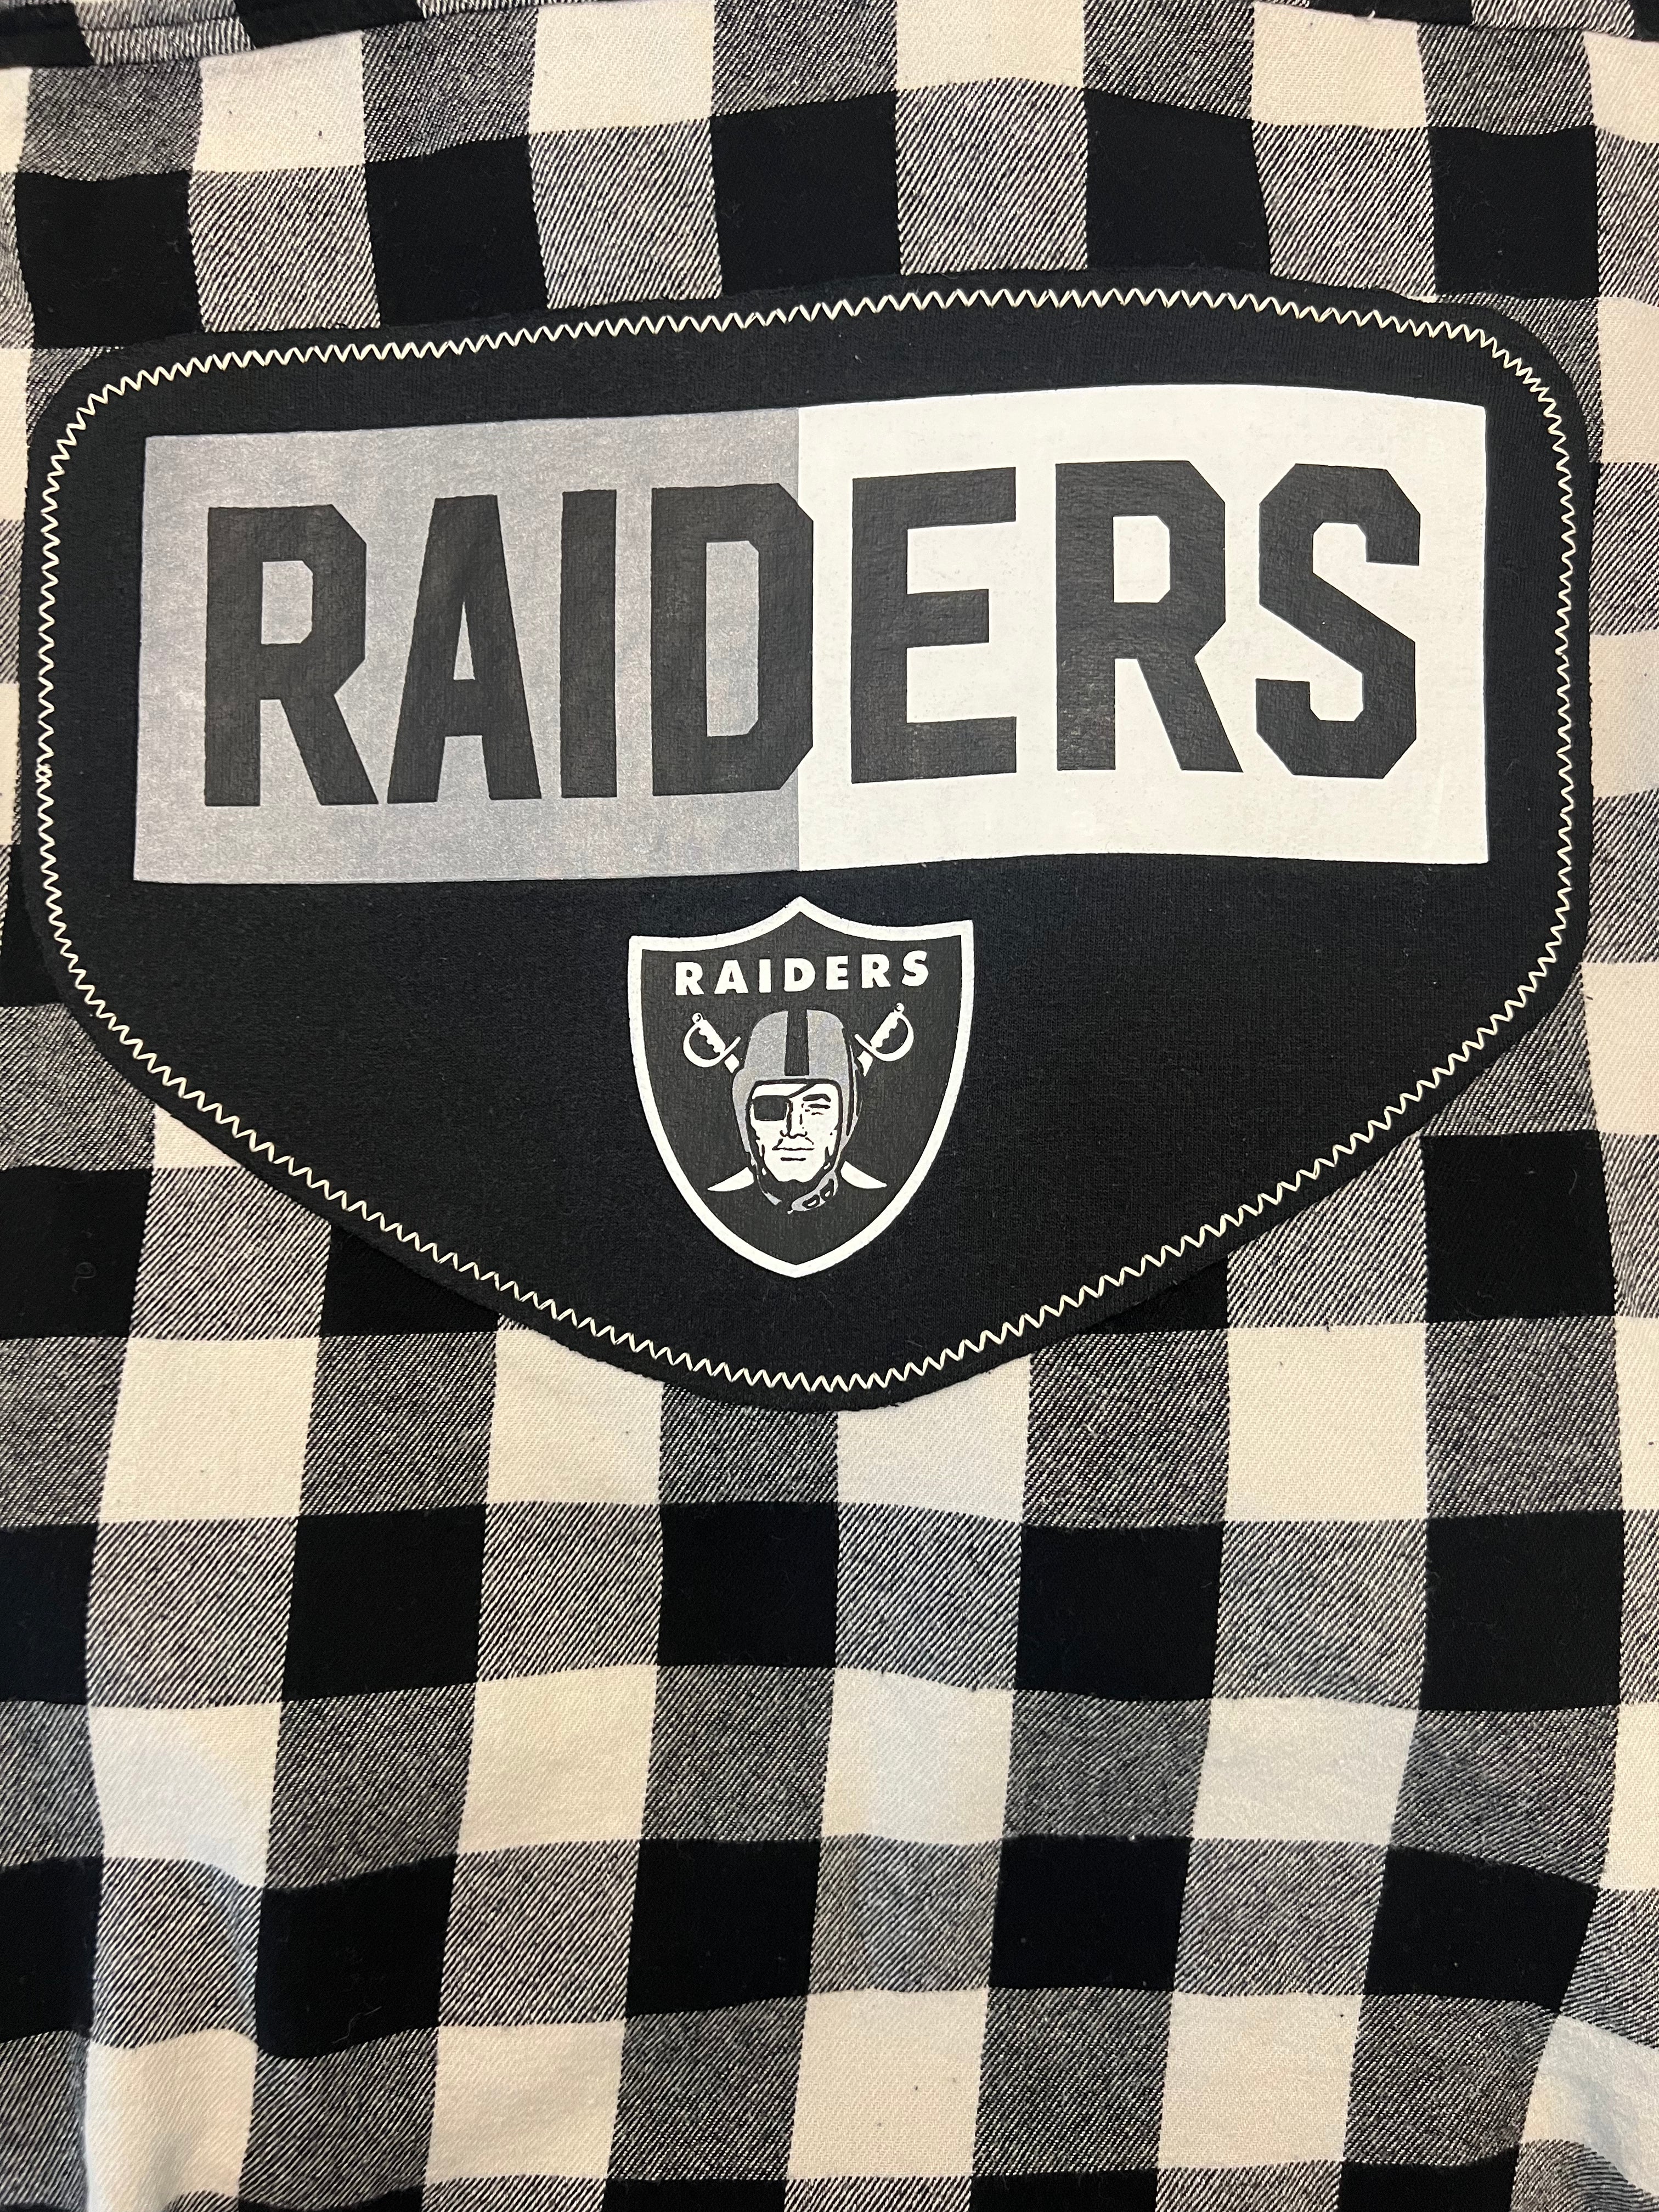 Raiders All Day (Women's - S/M)